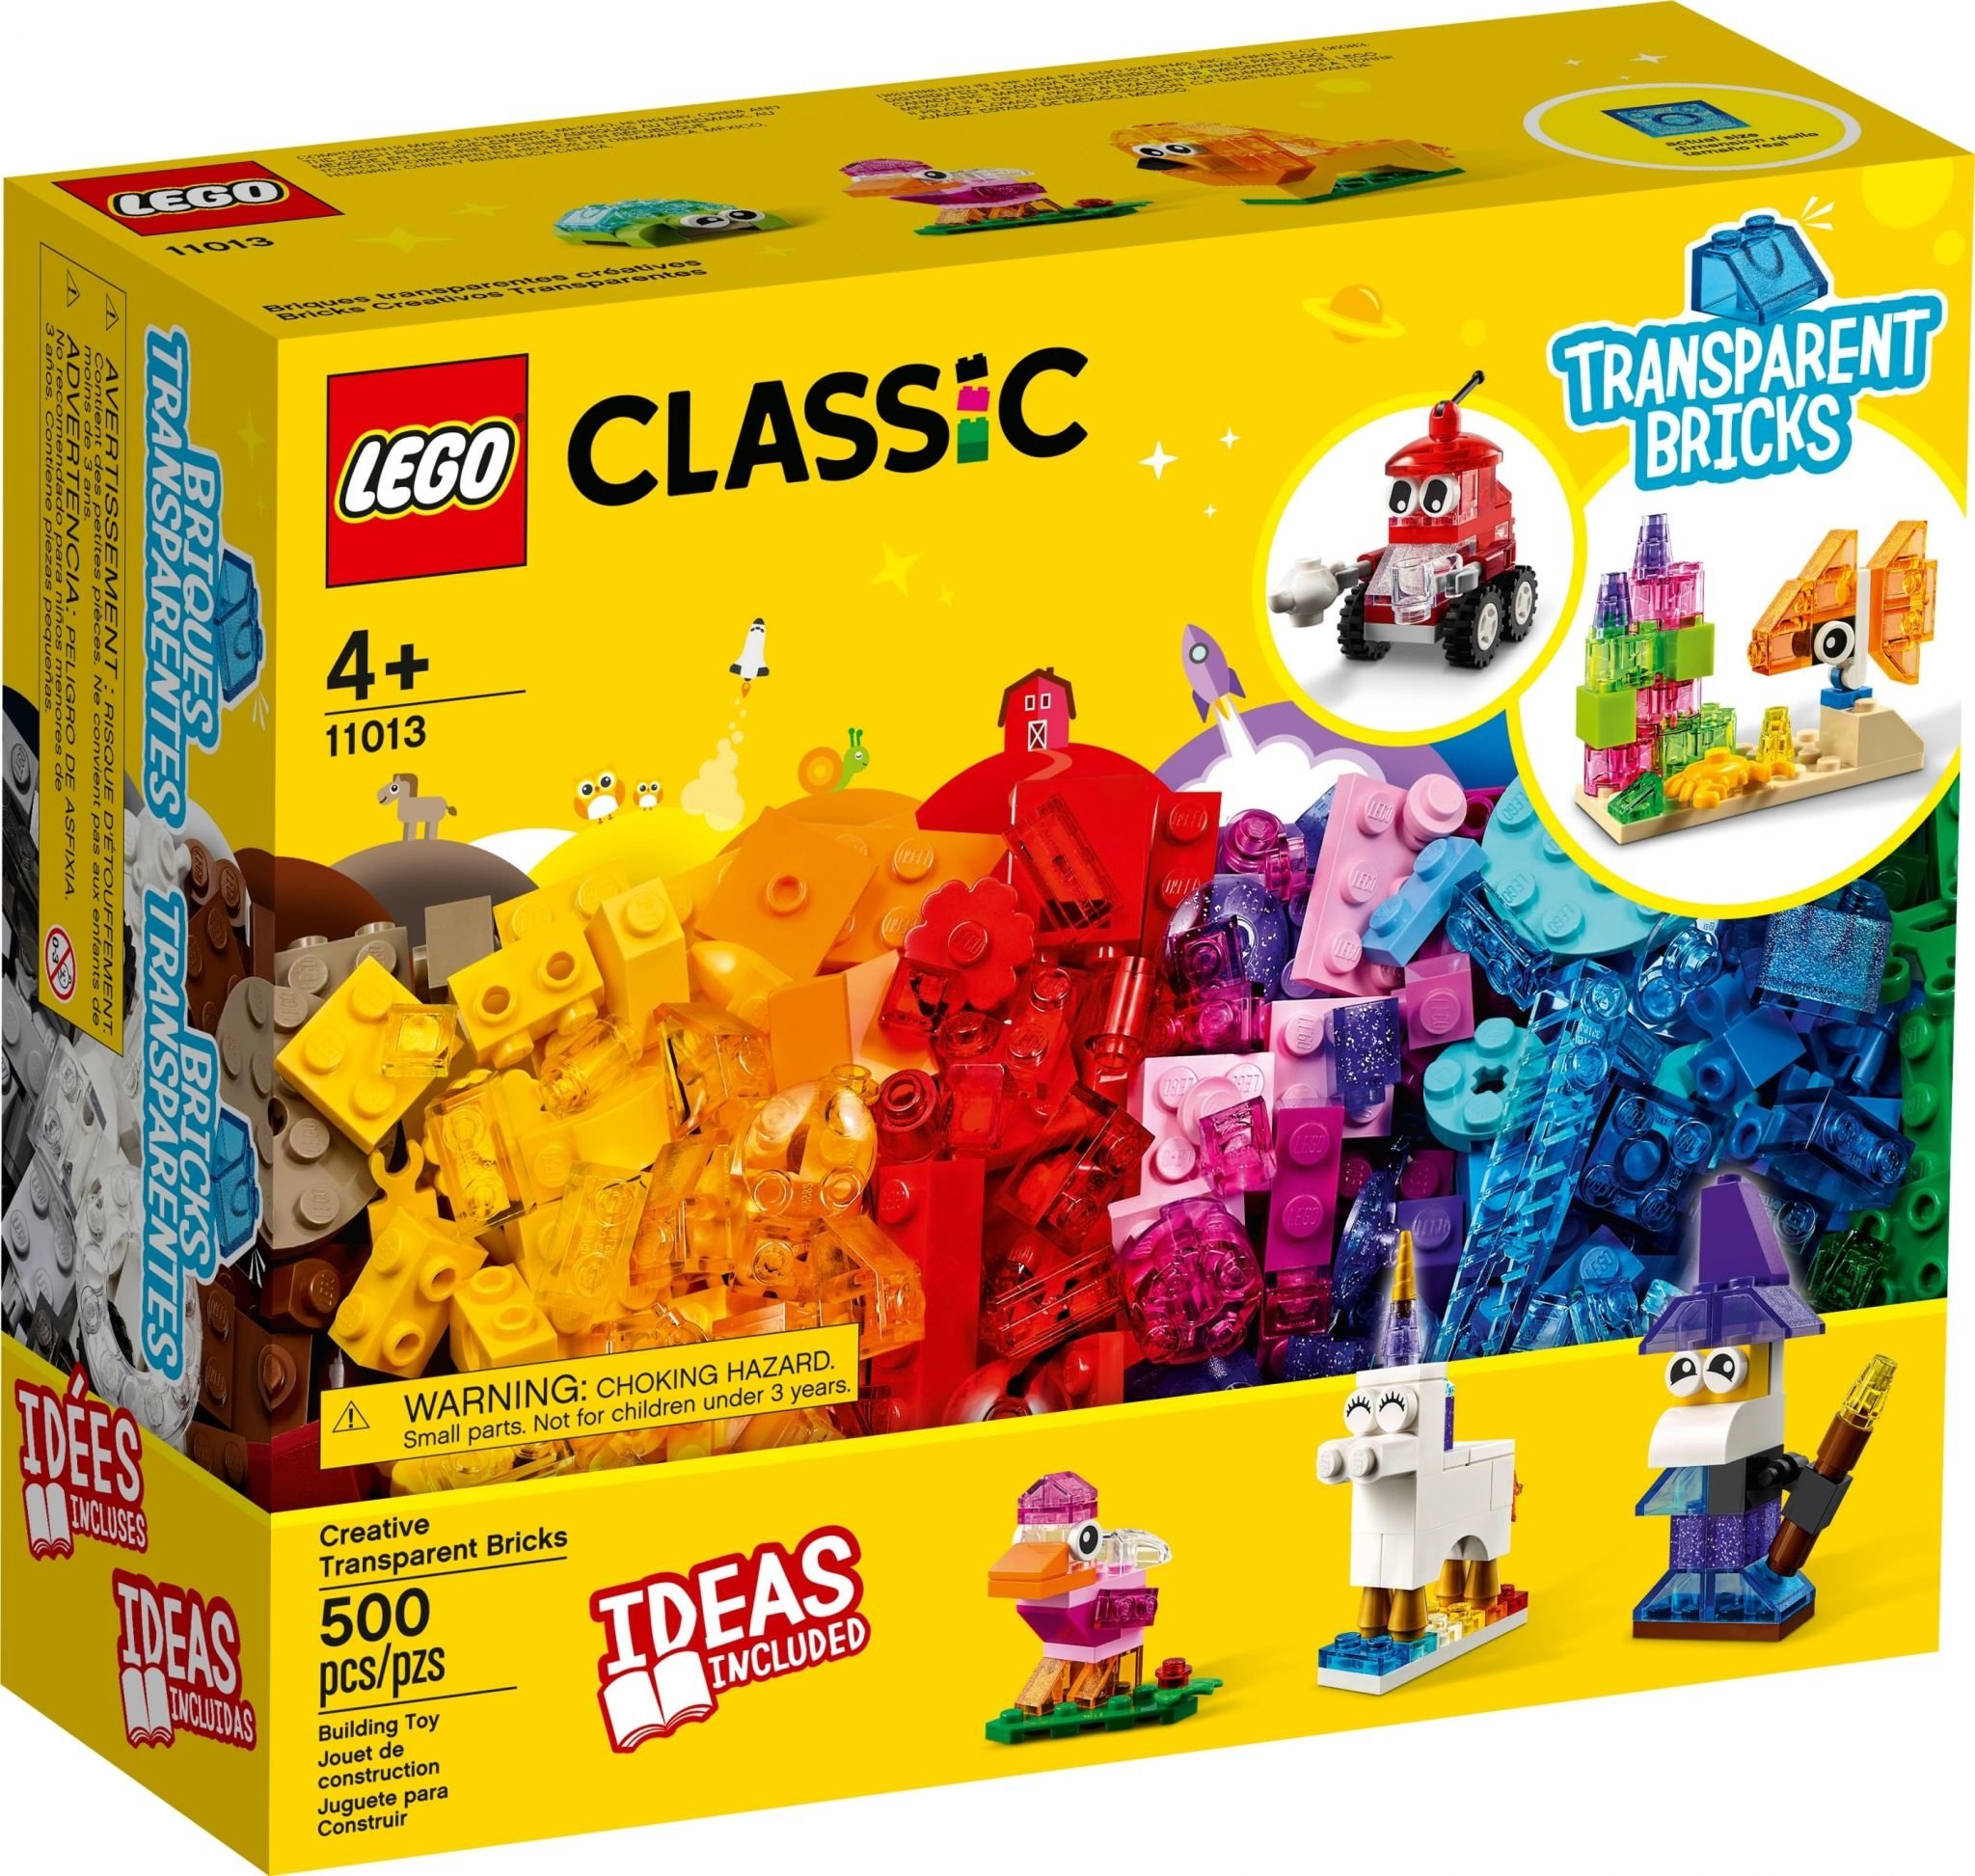 10696 La Boîte De Briques Creatives 'lego®' 'classic' 0115 - N/A